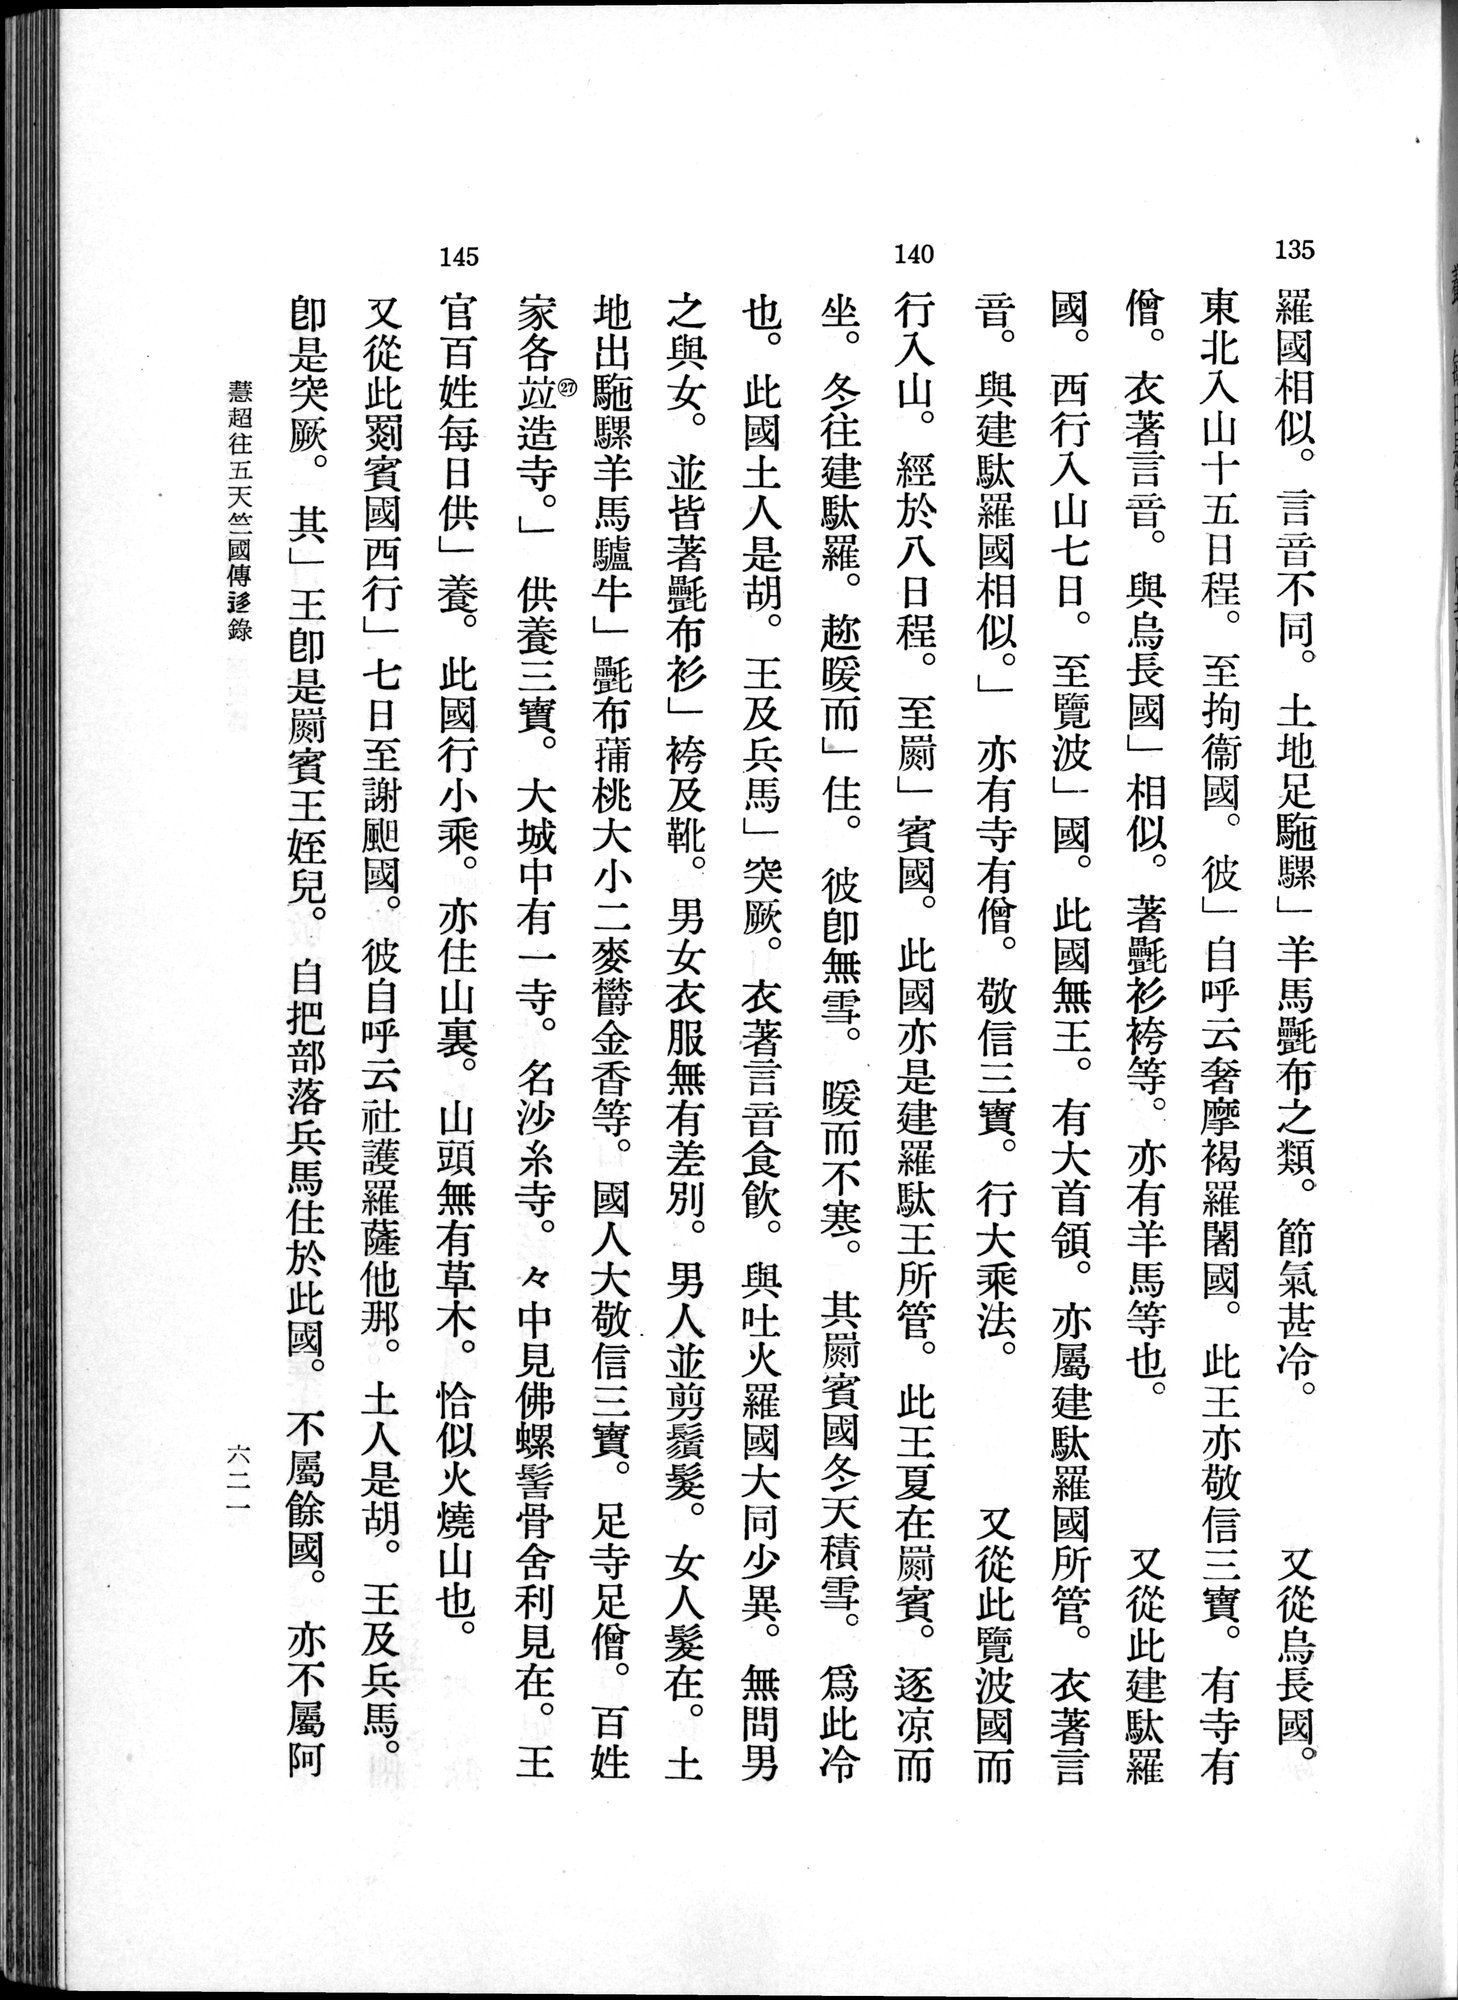 羽田博士史学論文集 : vol.1 / 659 ページ（白黒高解像度画像）